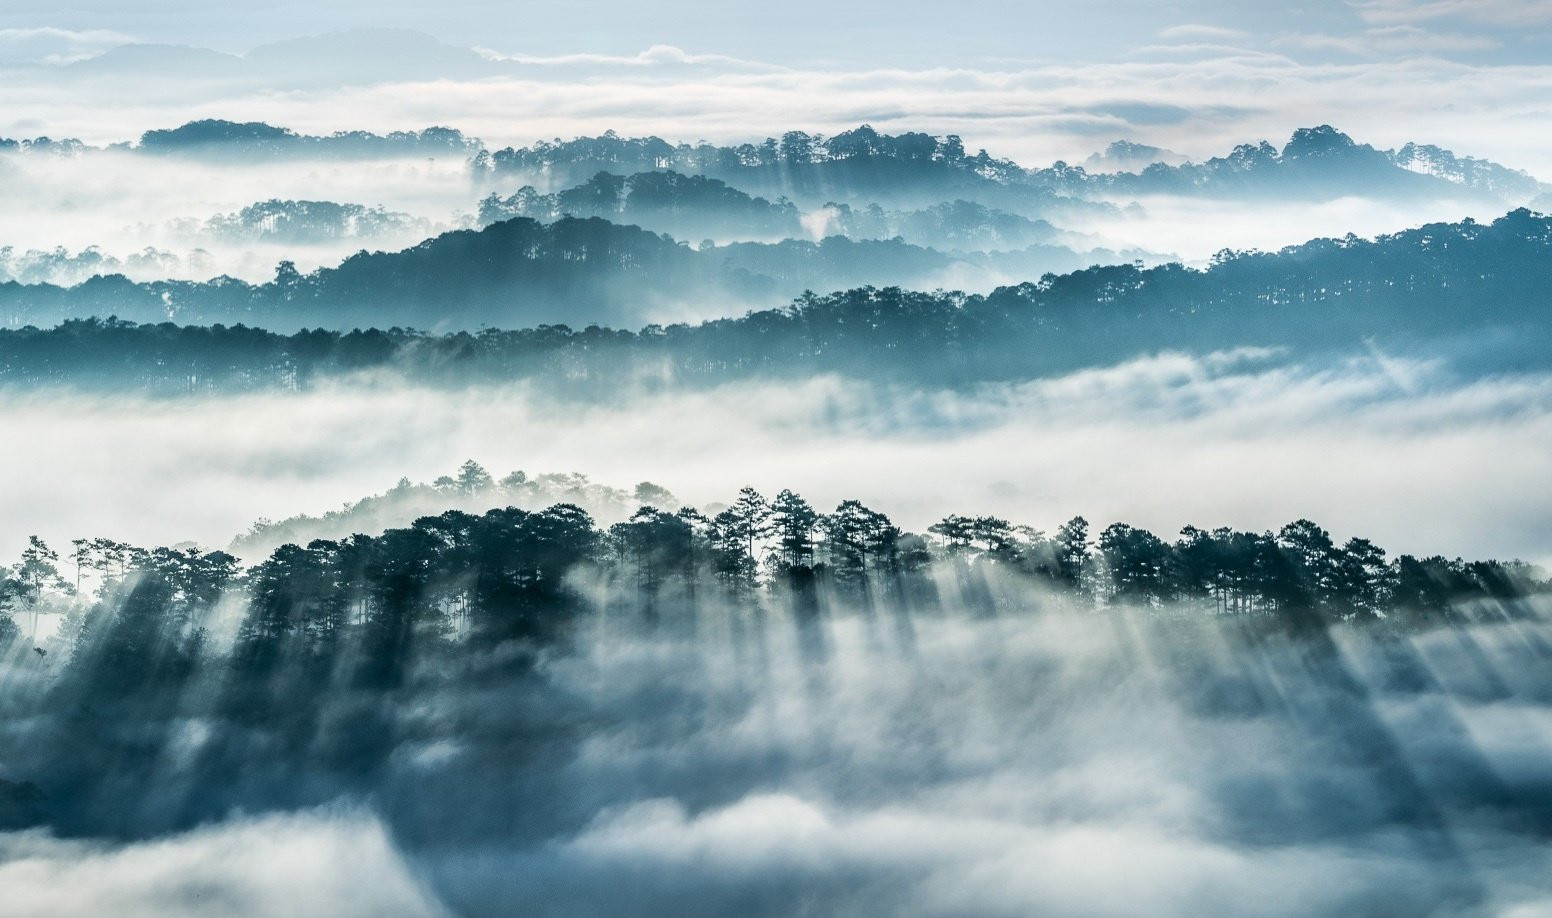 Du lịch Đà Lạt Tết đừng nên bỏ lỡ những địa điểm “săn mây” cực chất - ảnh 3